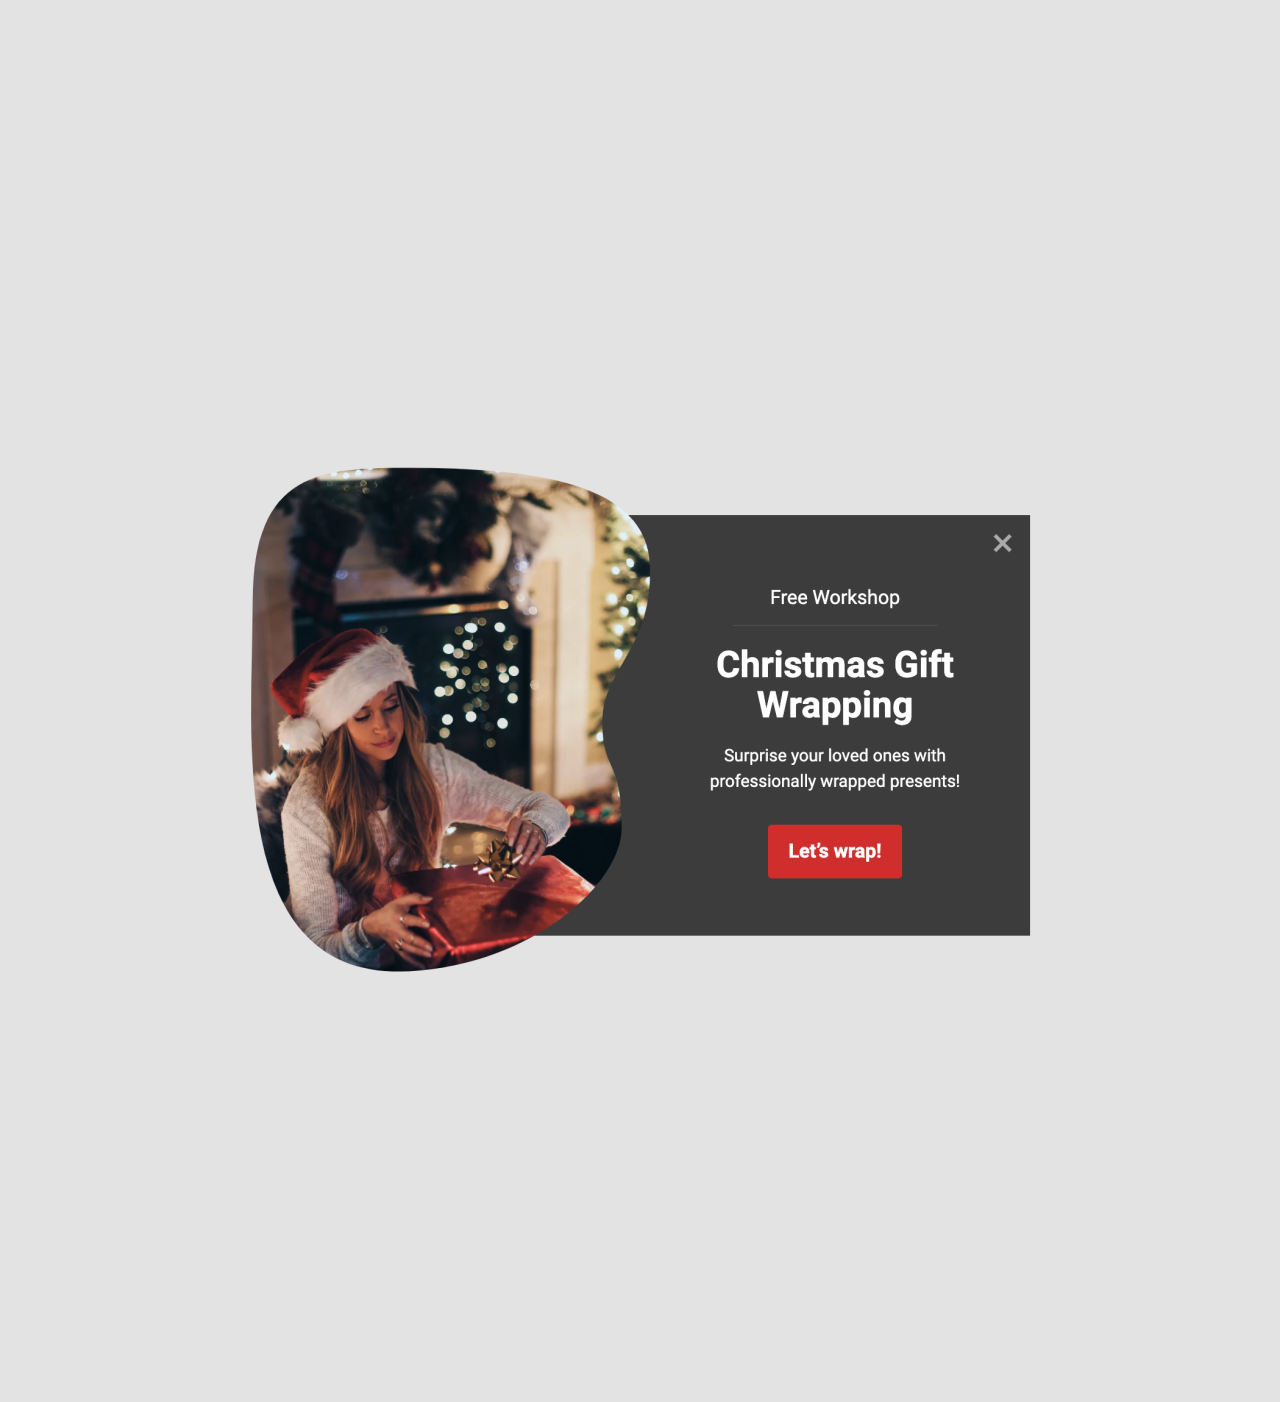 Holiday webinar invite szablon - stworzony przez MailerLite